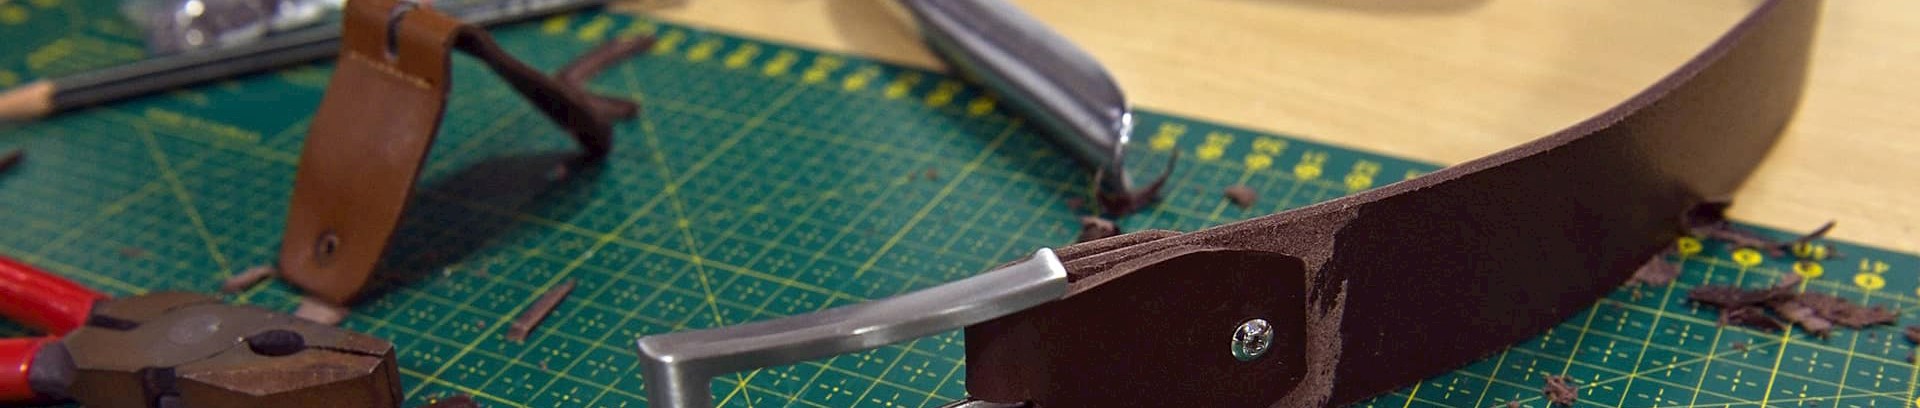 Læderbælte lavet på kursus i små ting i læder | FOF Aarhus